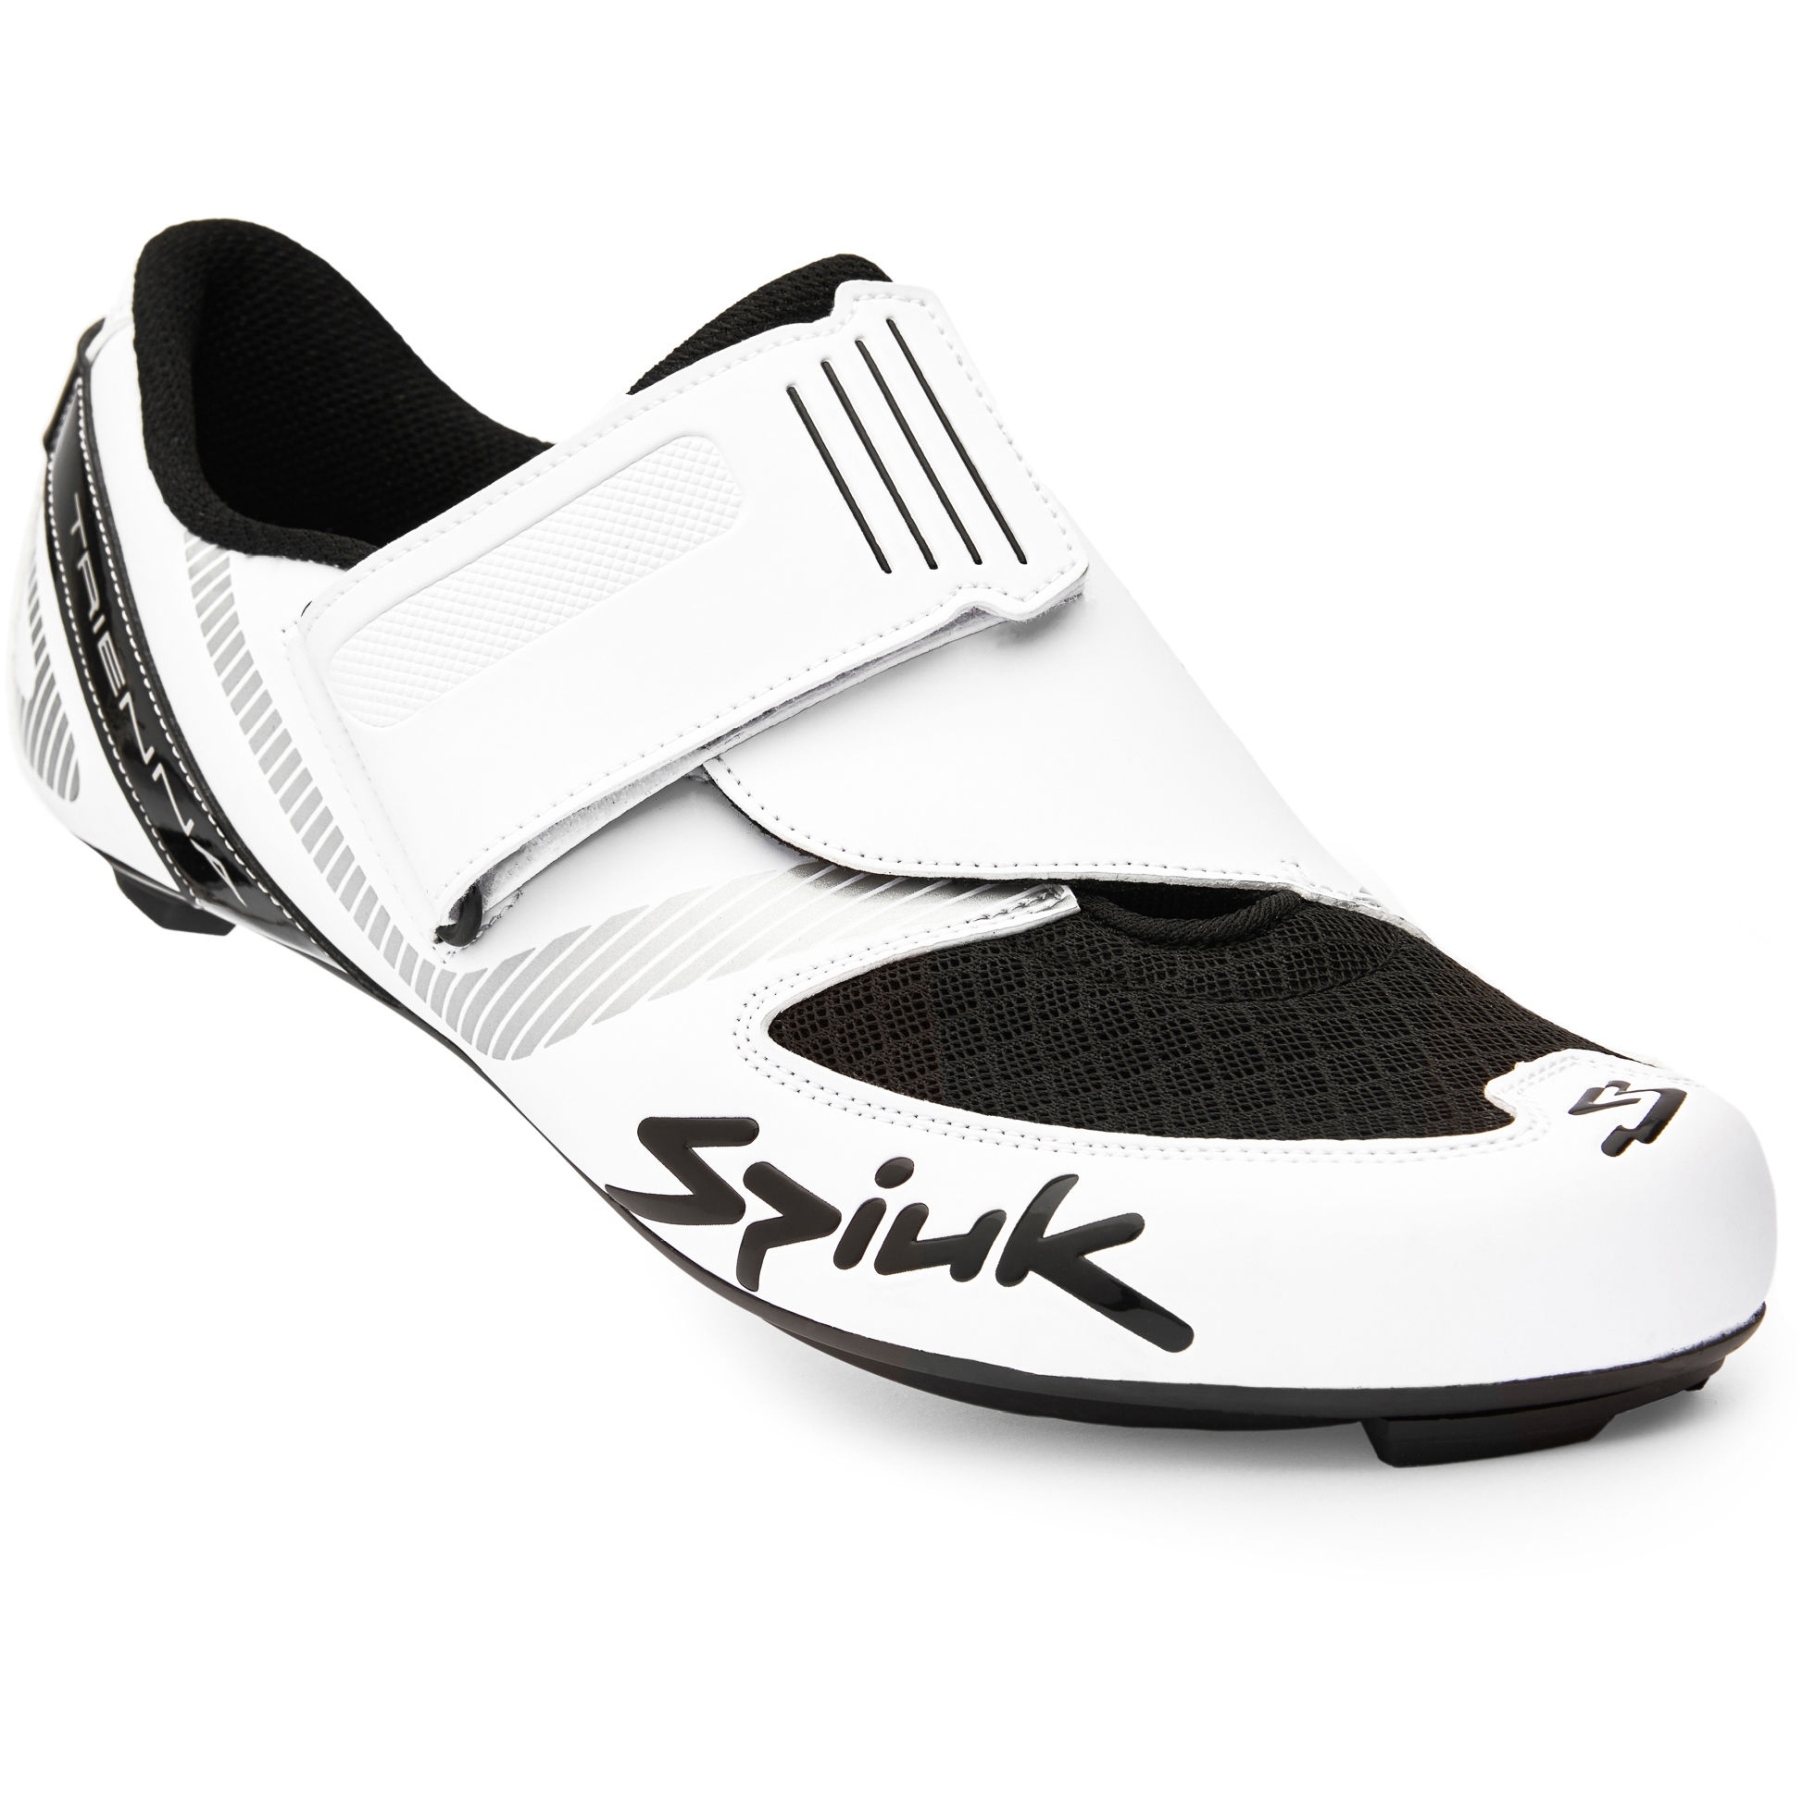 Produktbild von Spiuk Trienna Triathlon Carbon Schuh - white matt